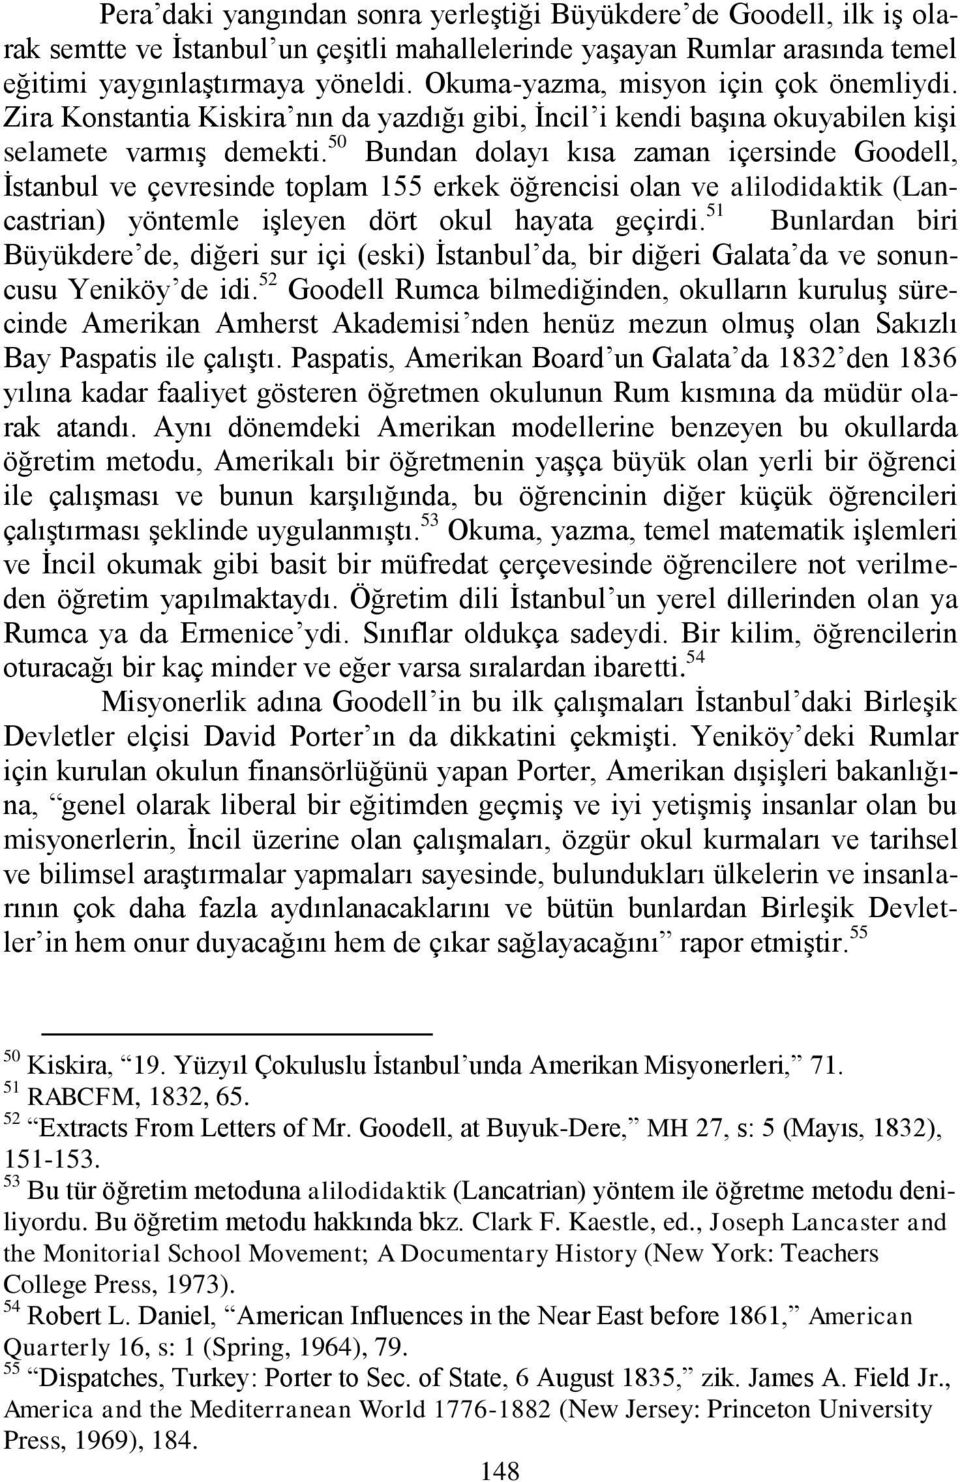 50 Bundan dolayı kısa zaman içersinde Goodell, İstanbul ve çevresinde toplam 155 erkek öğrencisi olan ve alilodidaktik (Lancastrian) yöntemle işleyen dört okul hayata geçirdi.